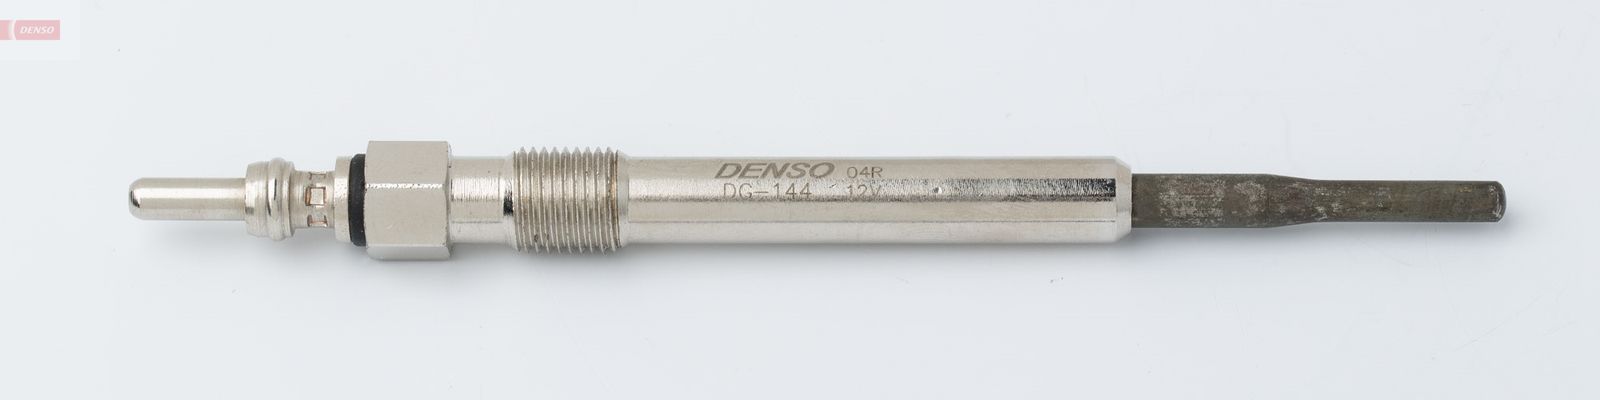 Žhavící svíčka DENSO DG-144